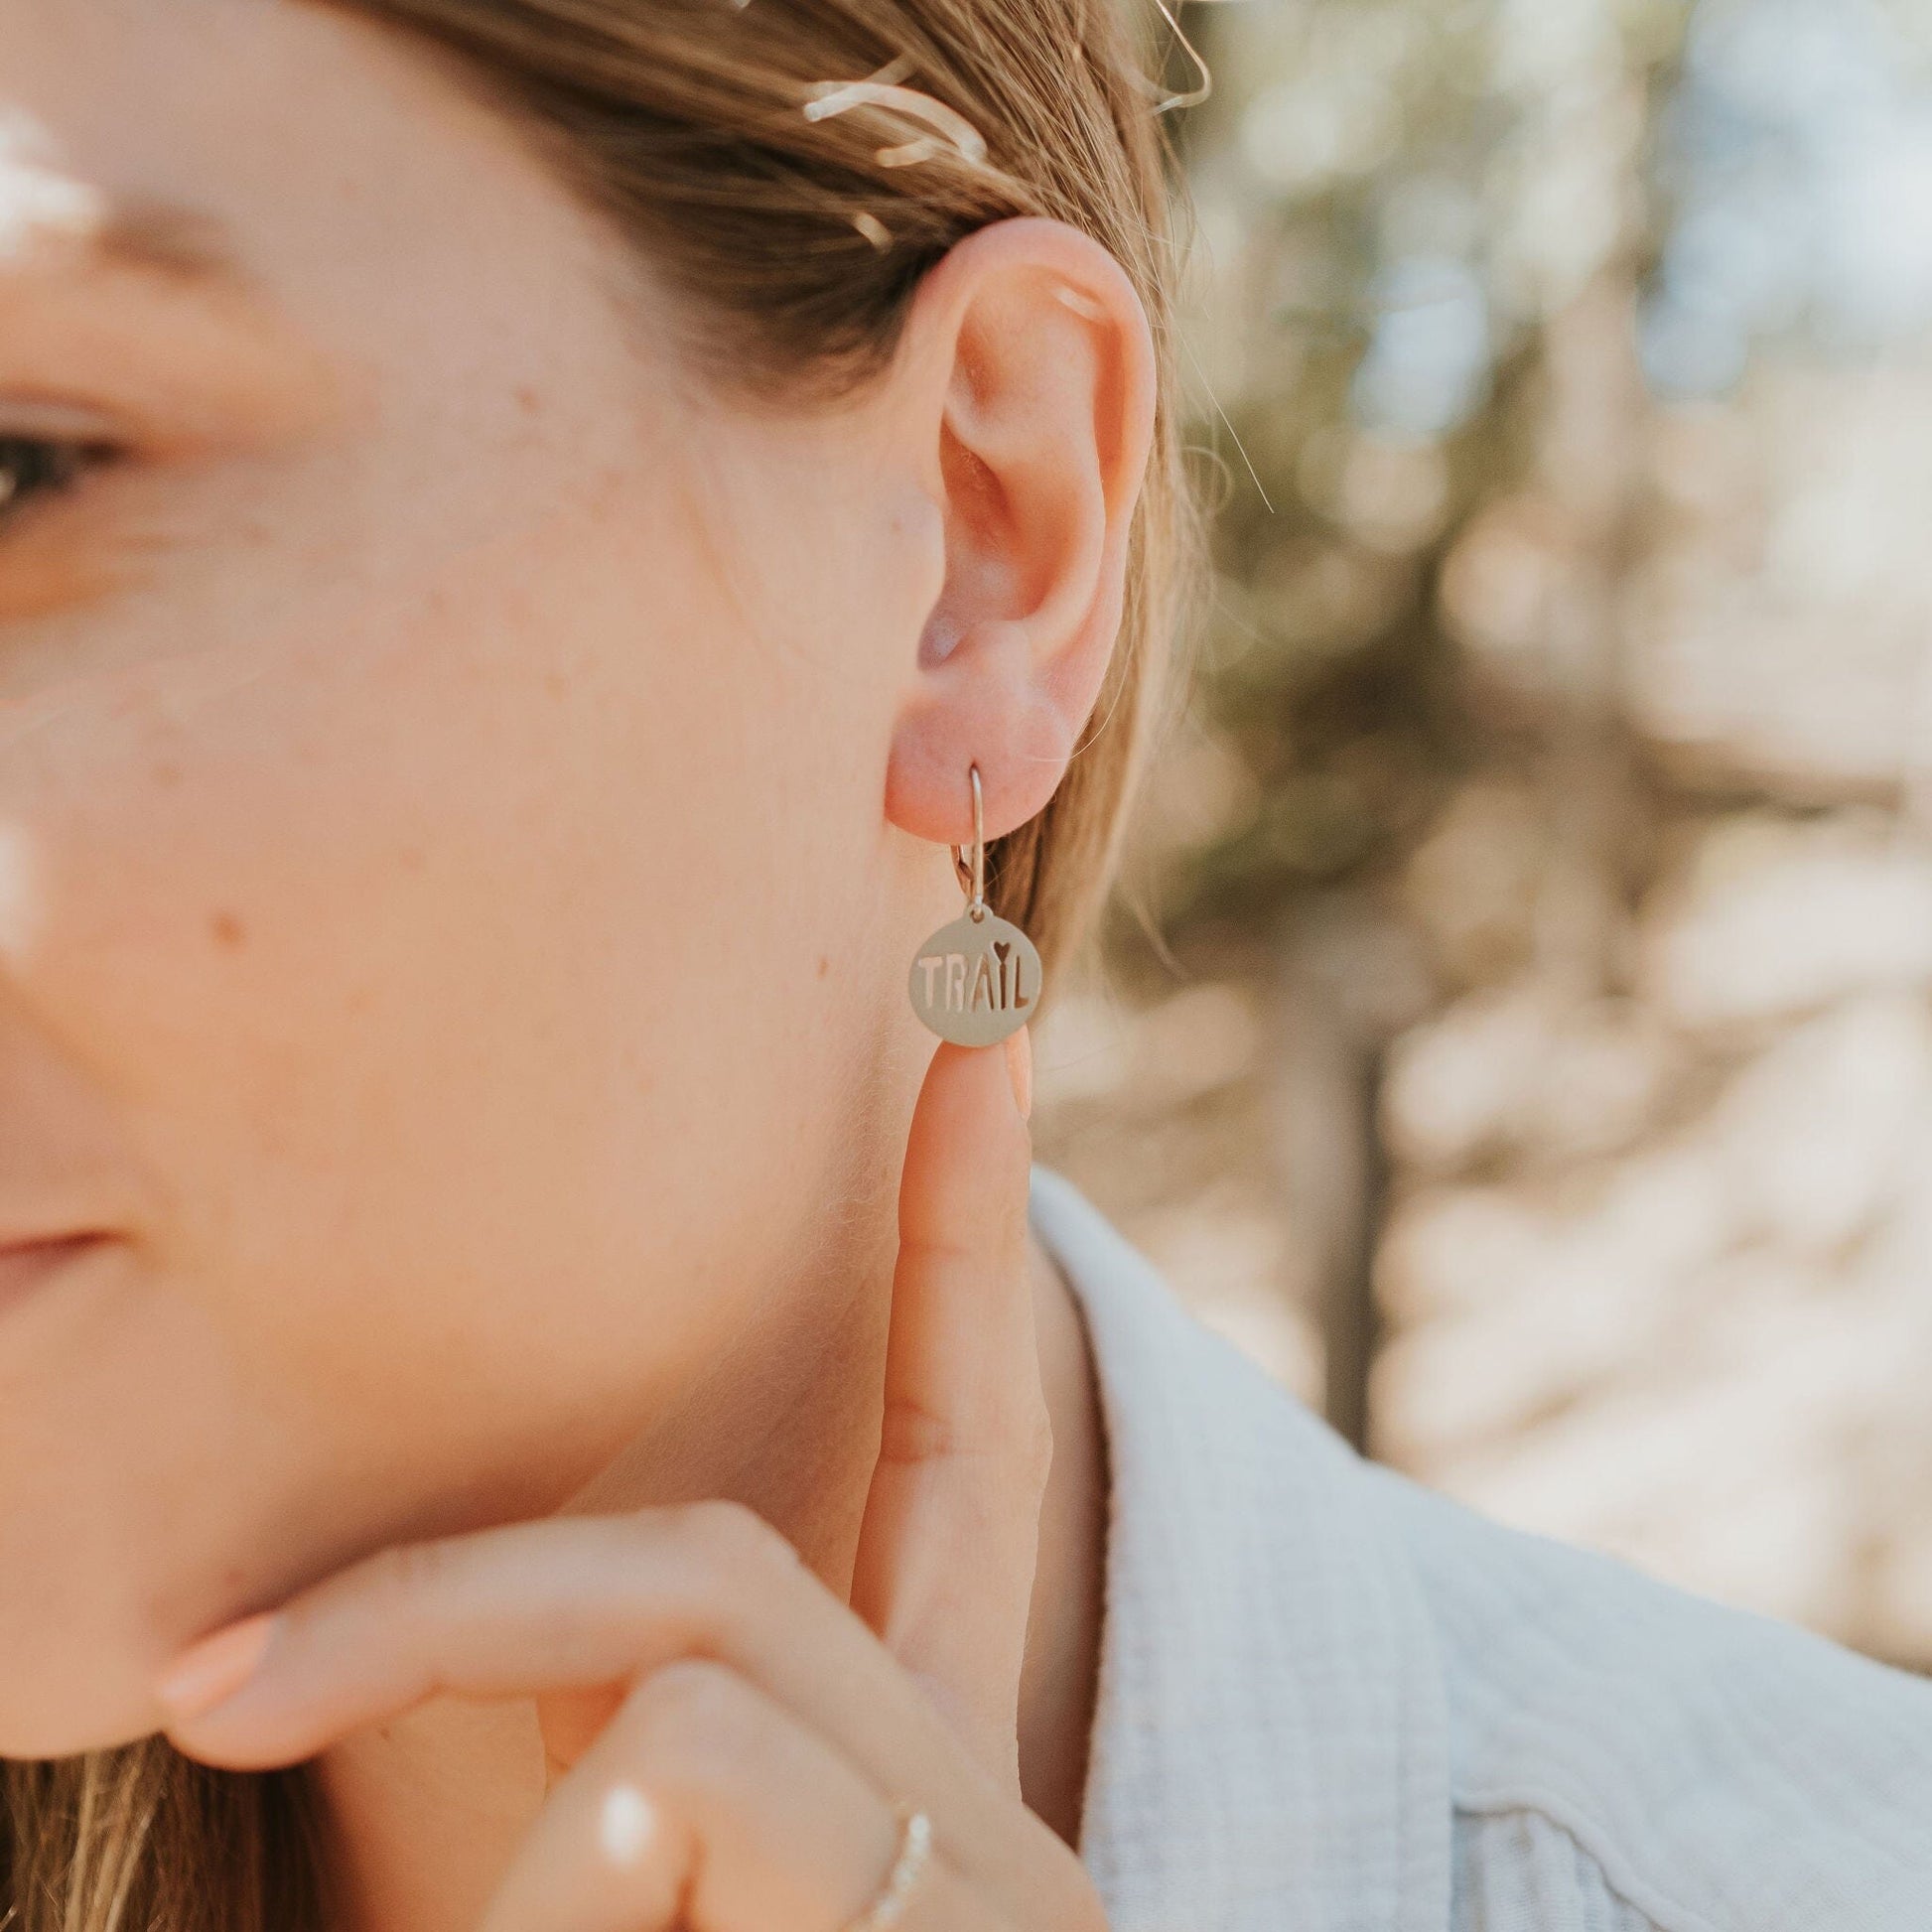 Girl wearing trail love earrings in stainless steel 